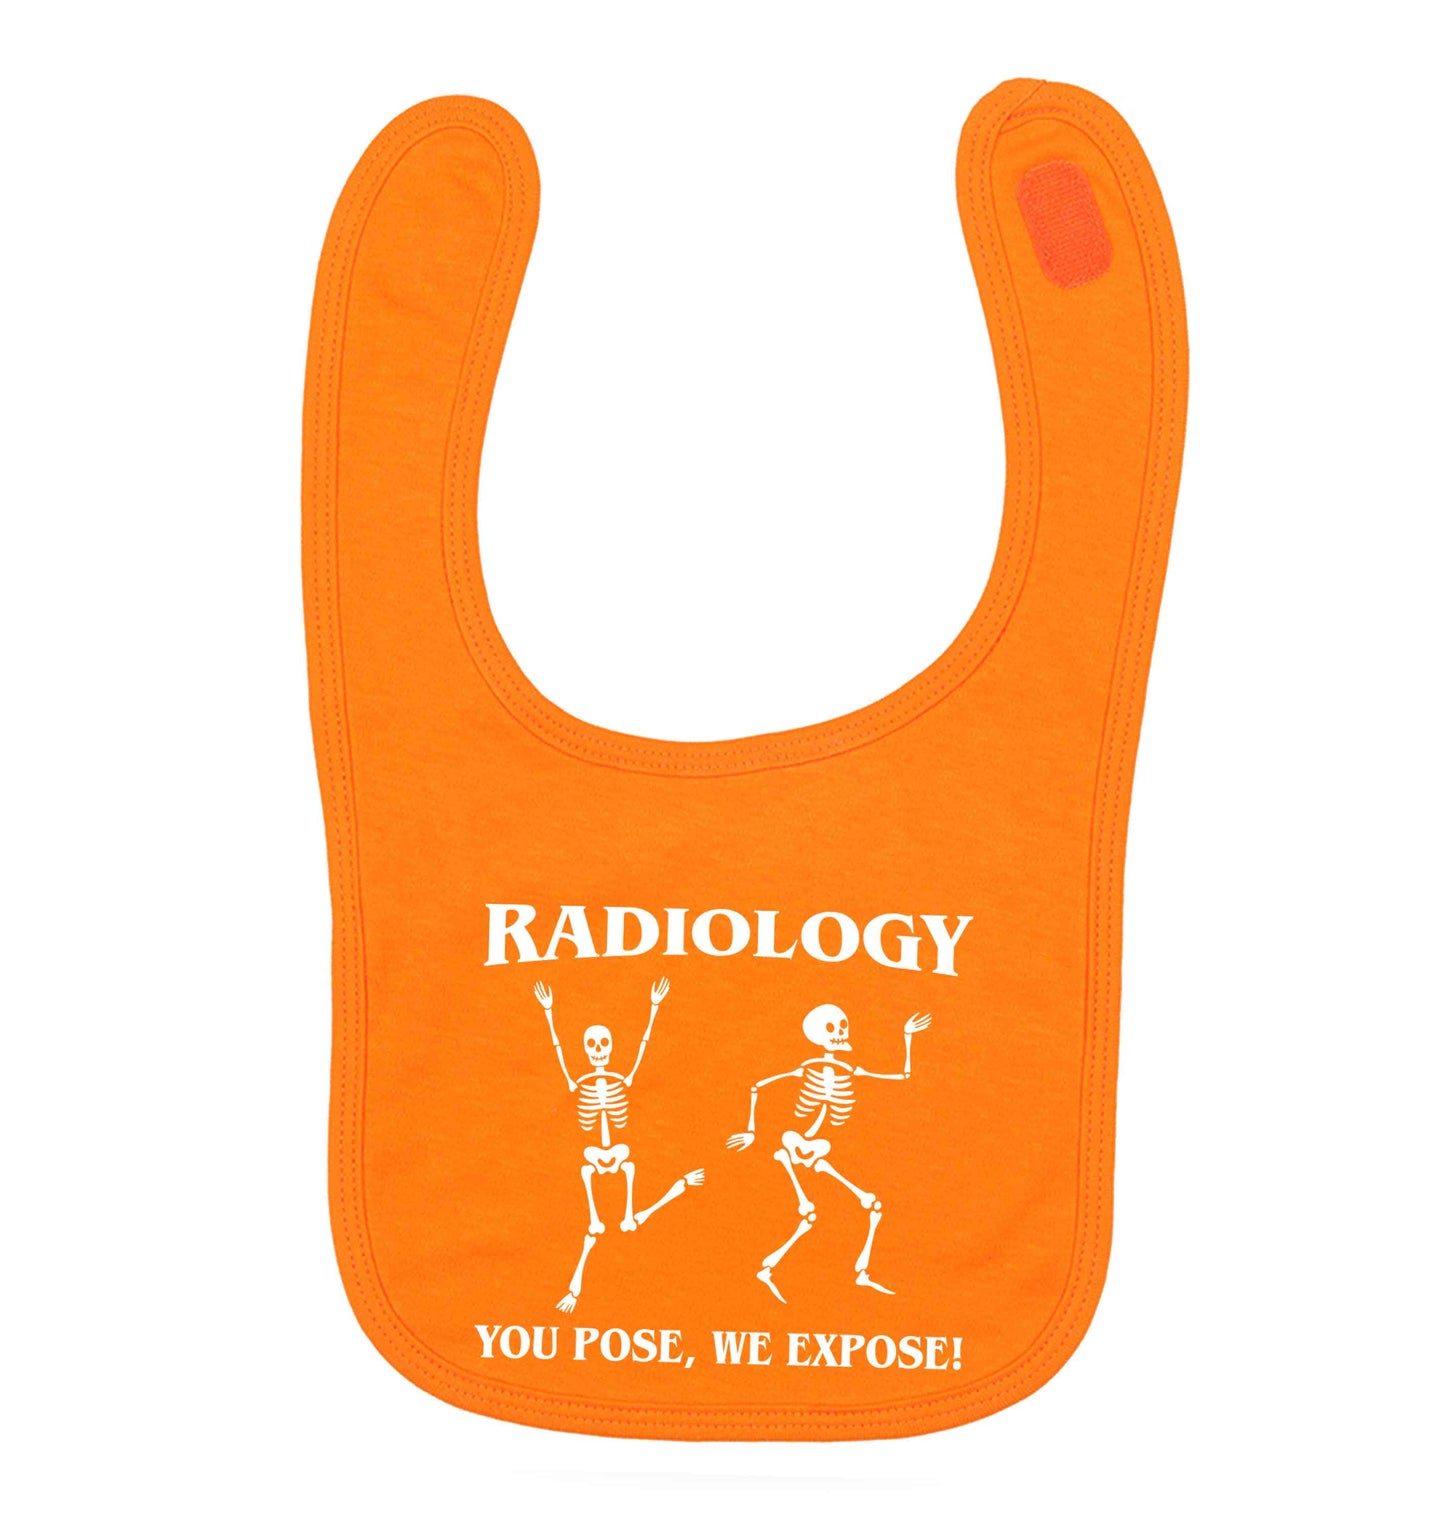 Radiology you pose we expose orange baby bib